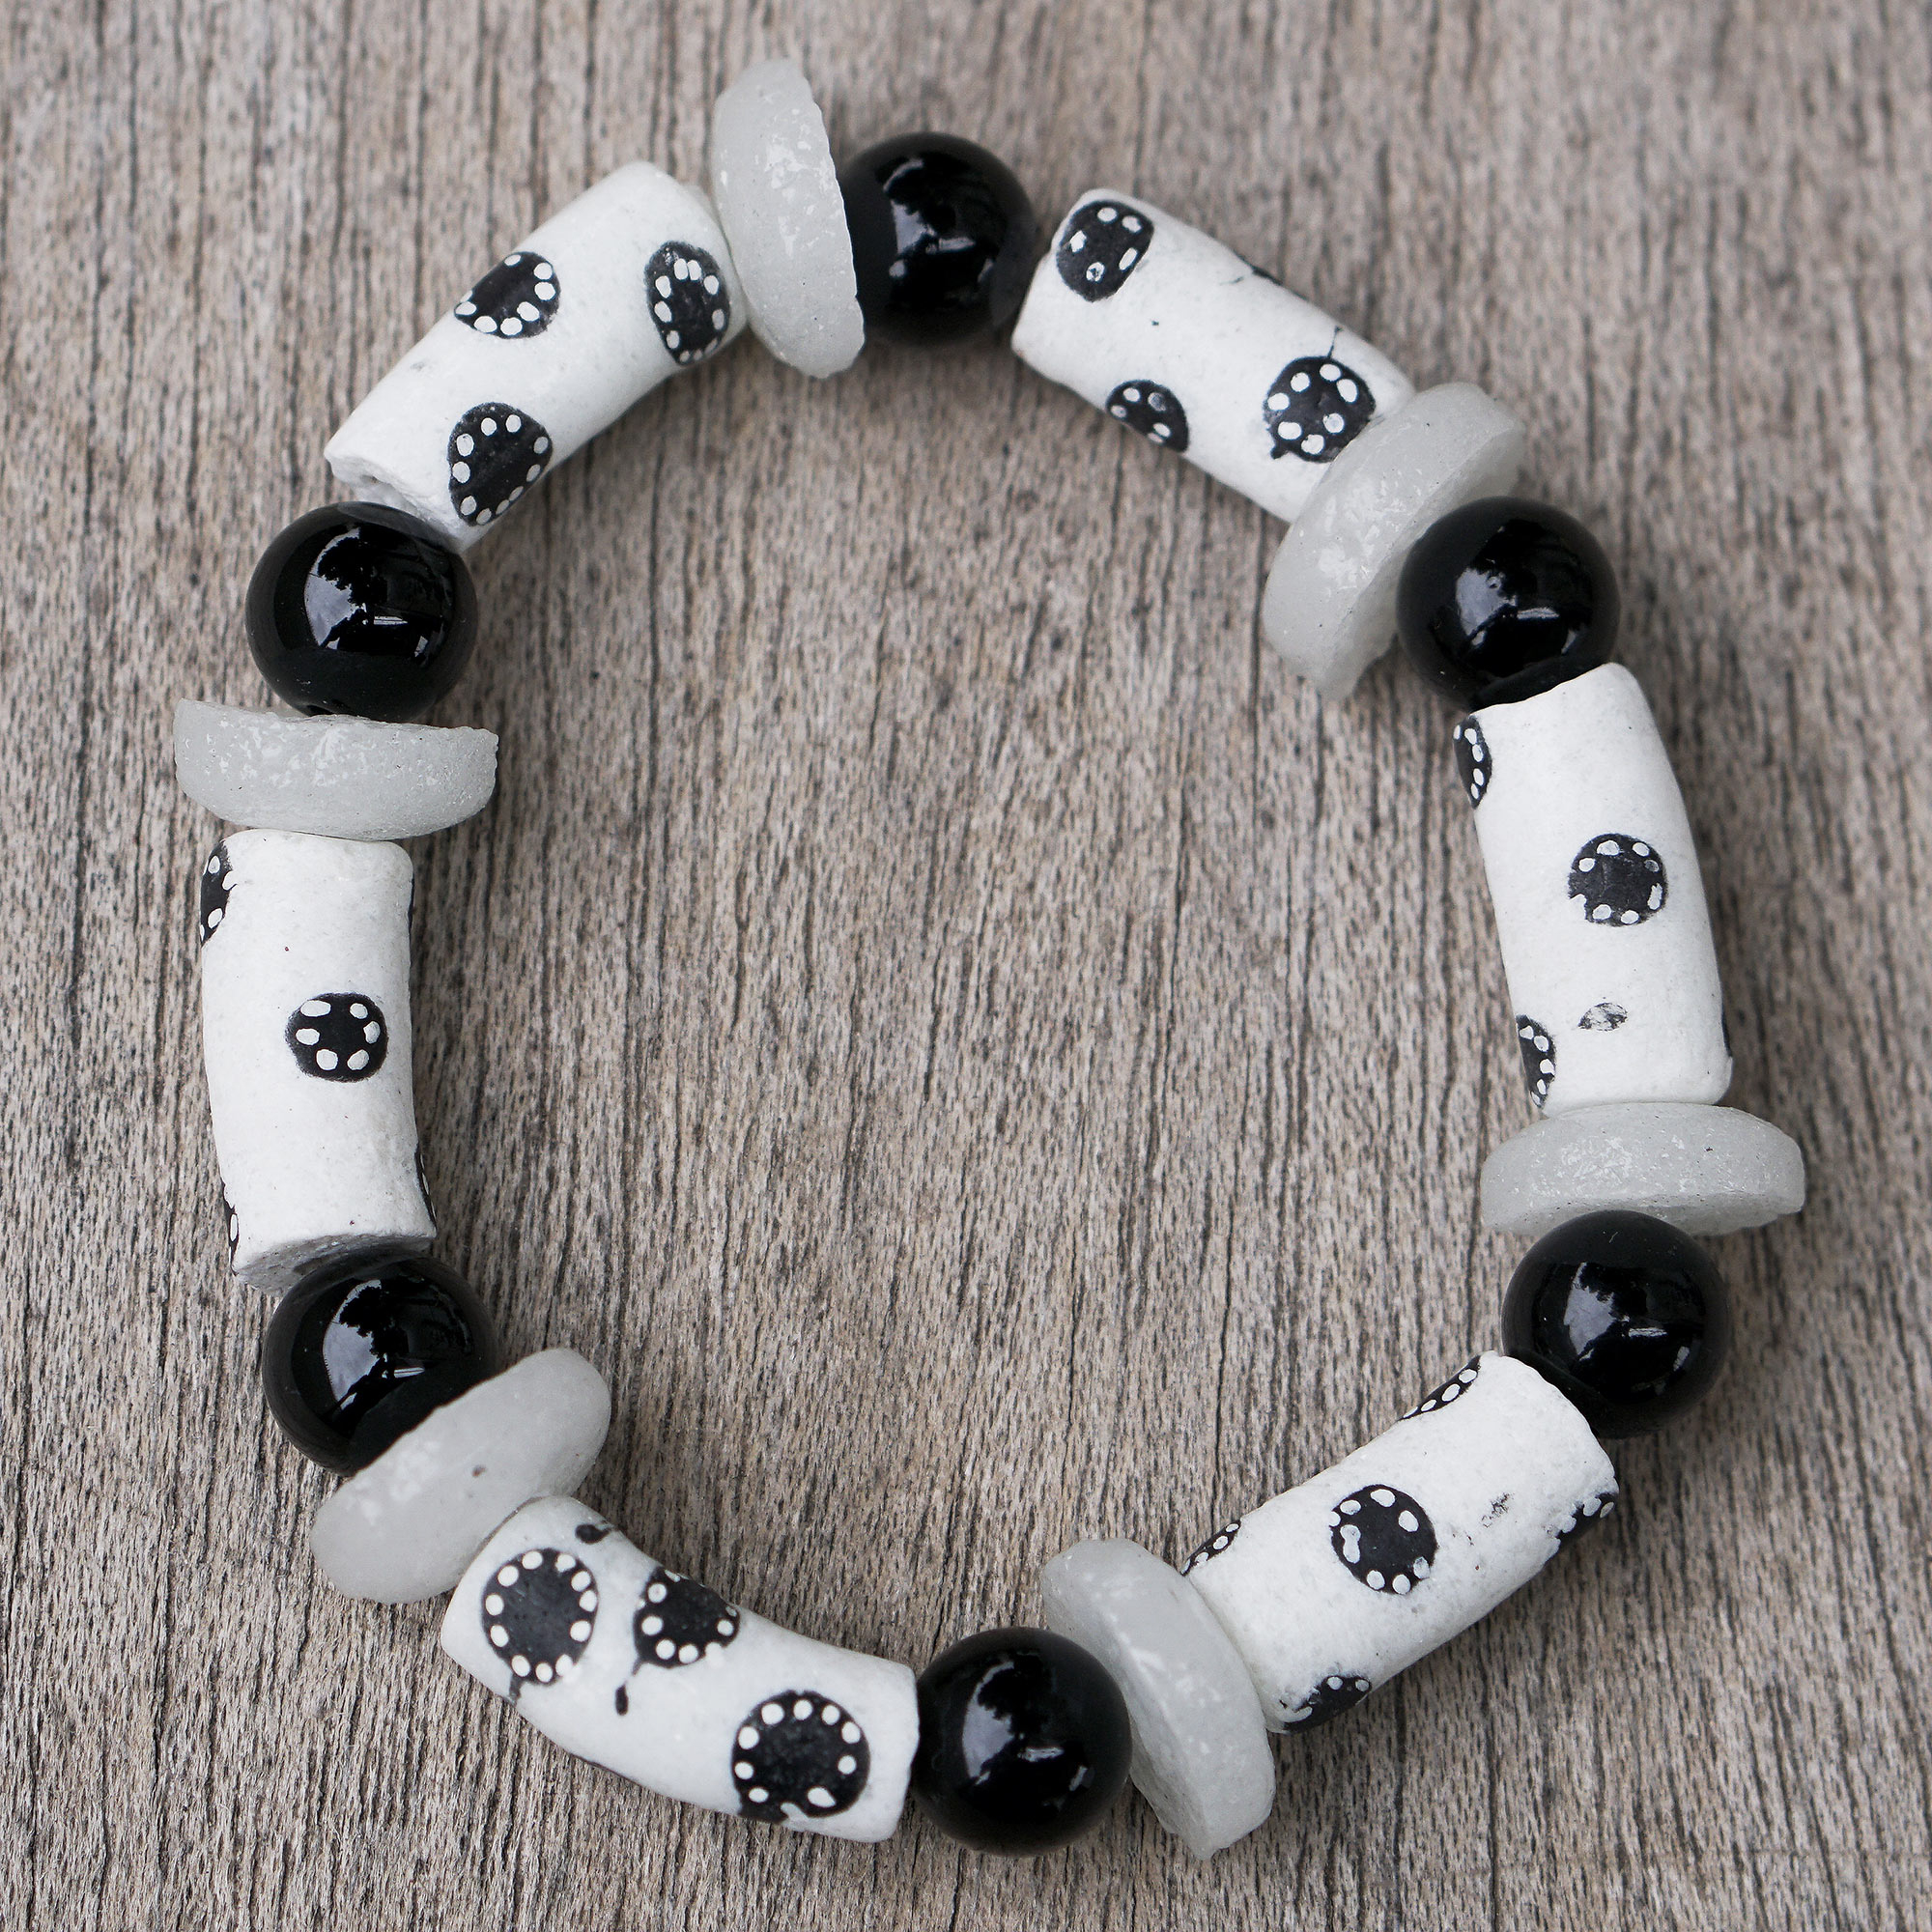 Handmade Recycled Glass Beaded Bracelet in Black and White - Black